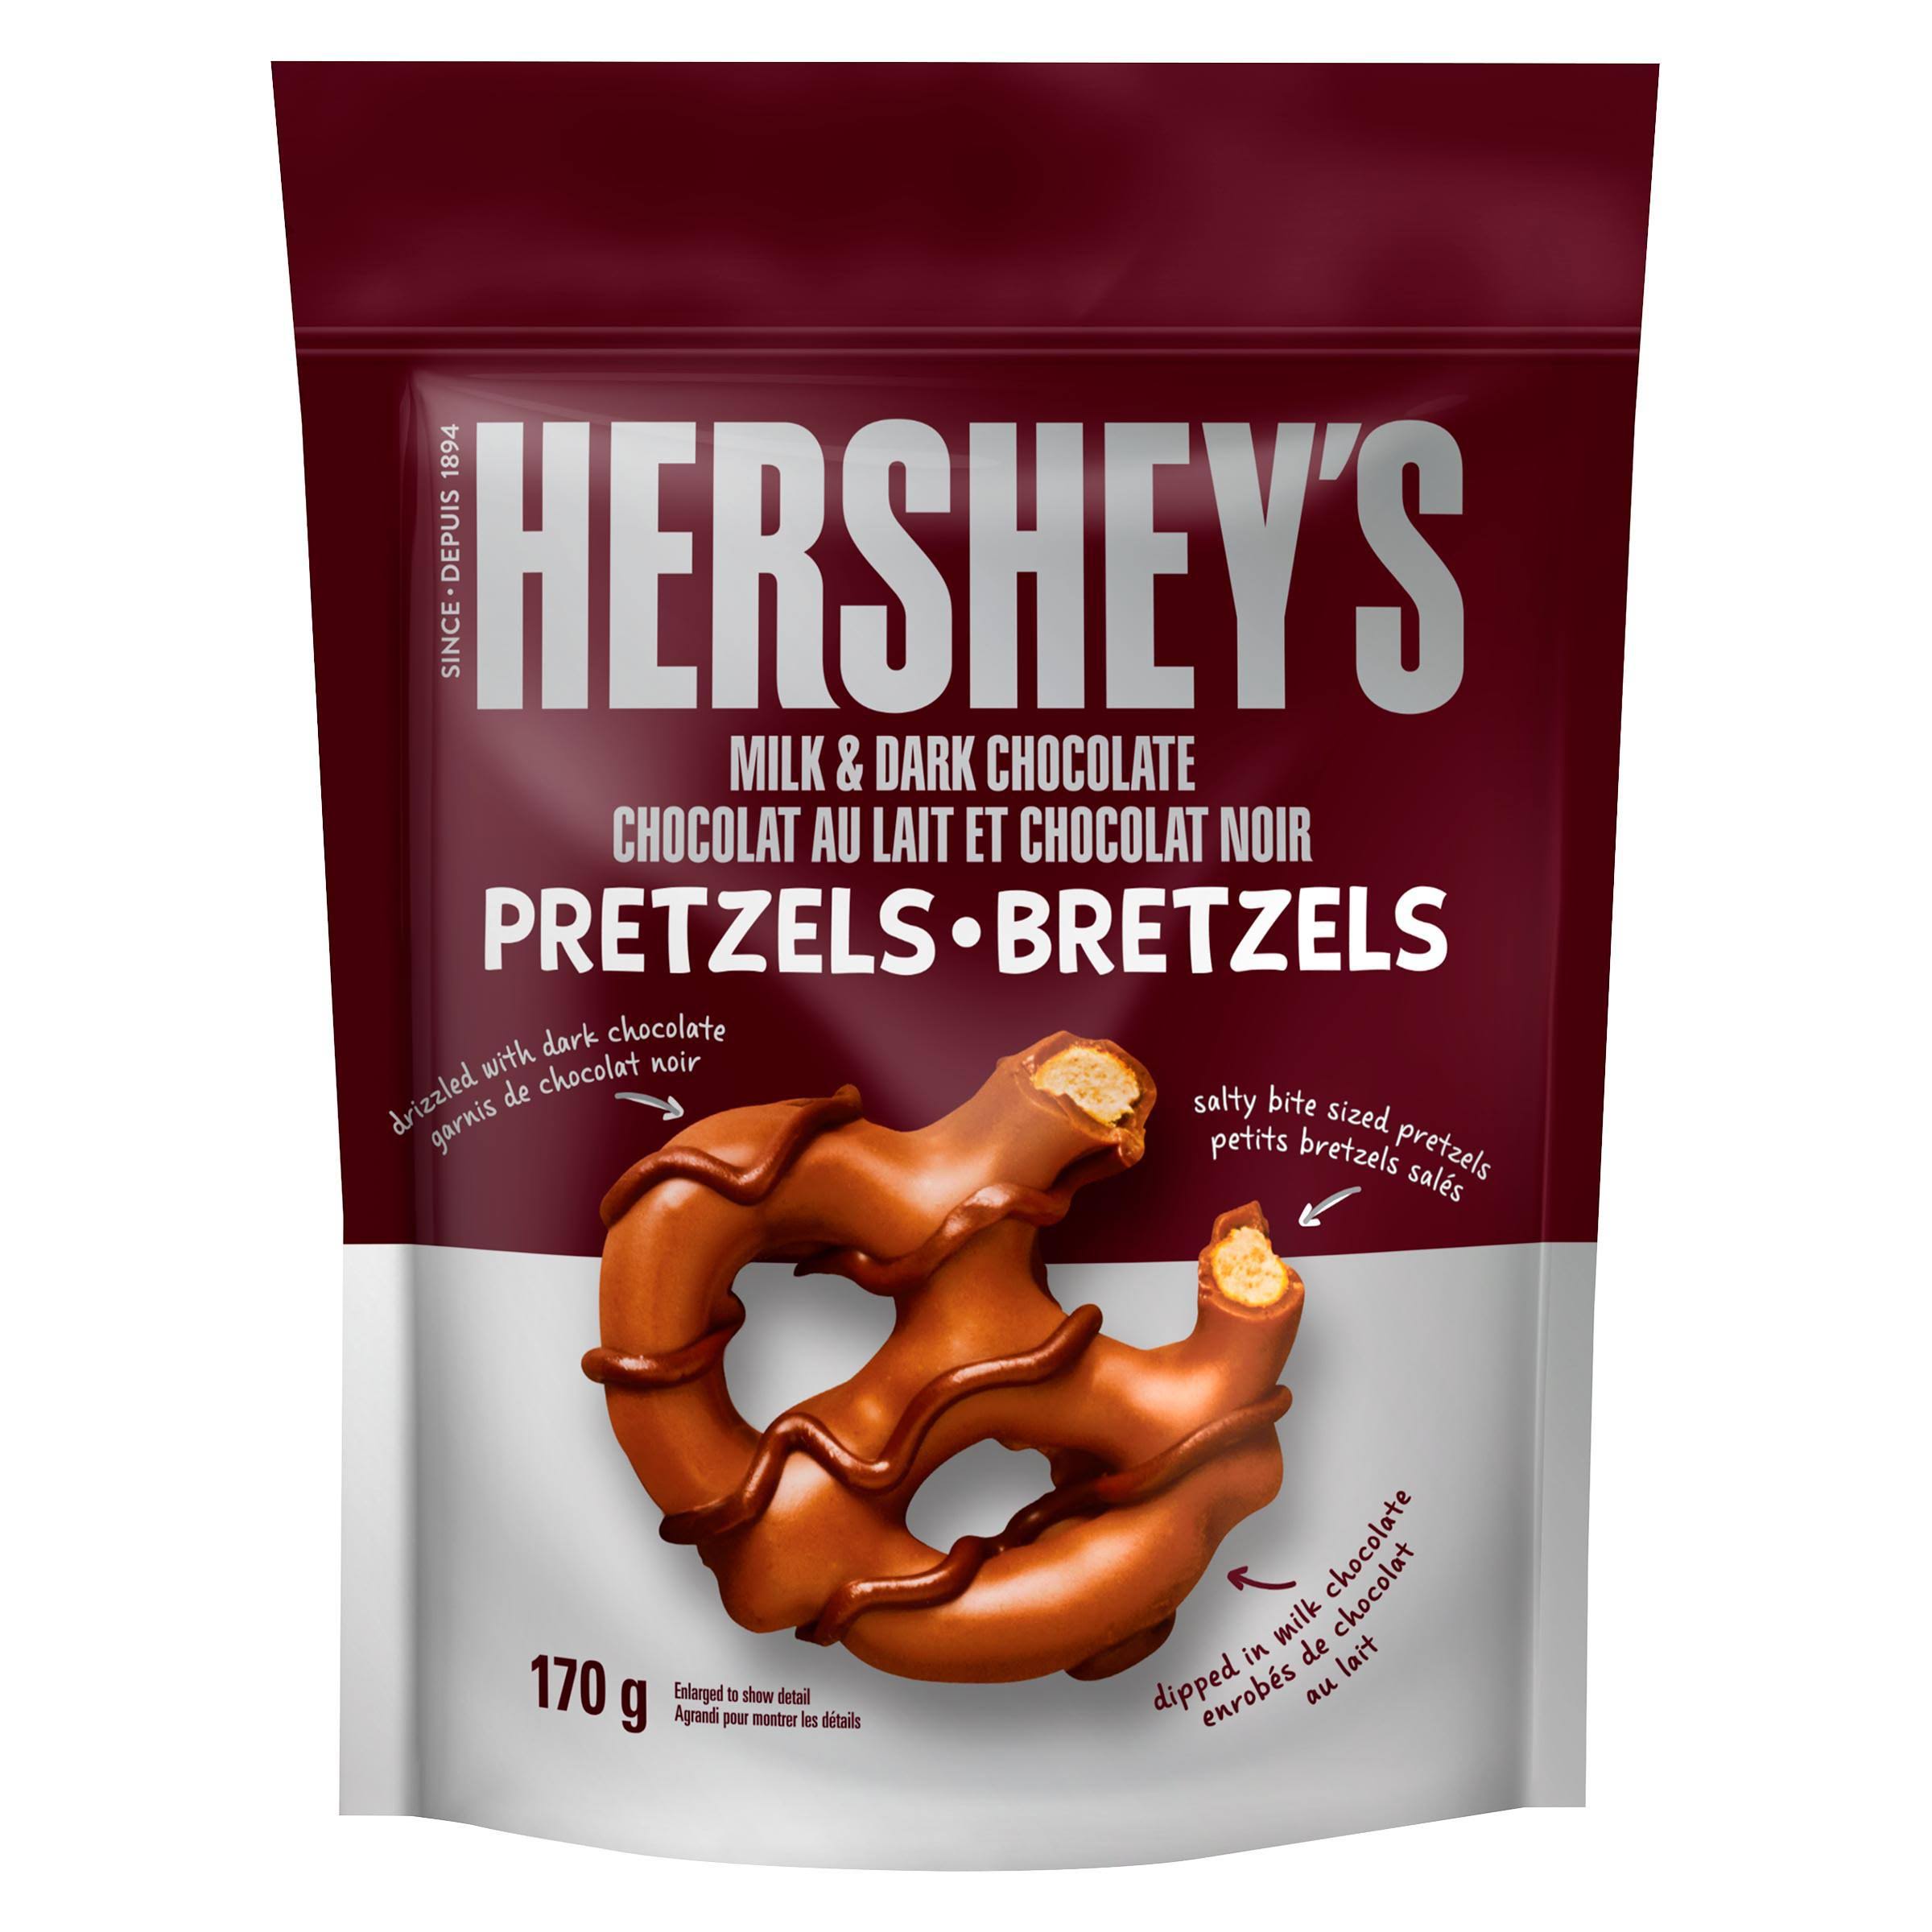 Hershey's Milk & Dark Chocolate Pretzels